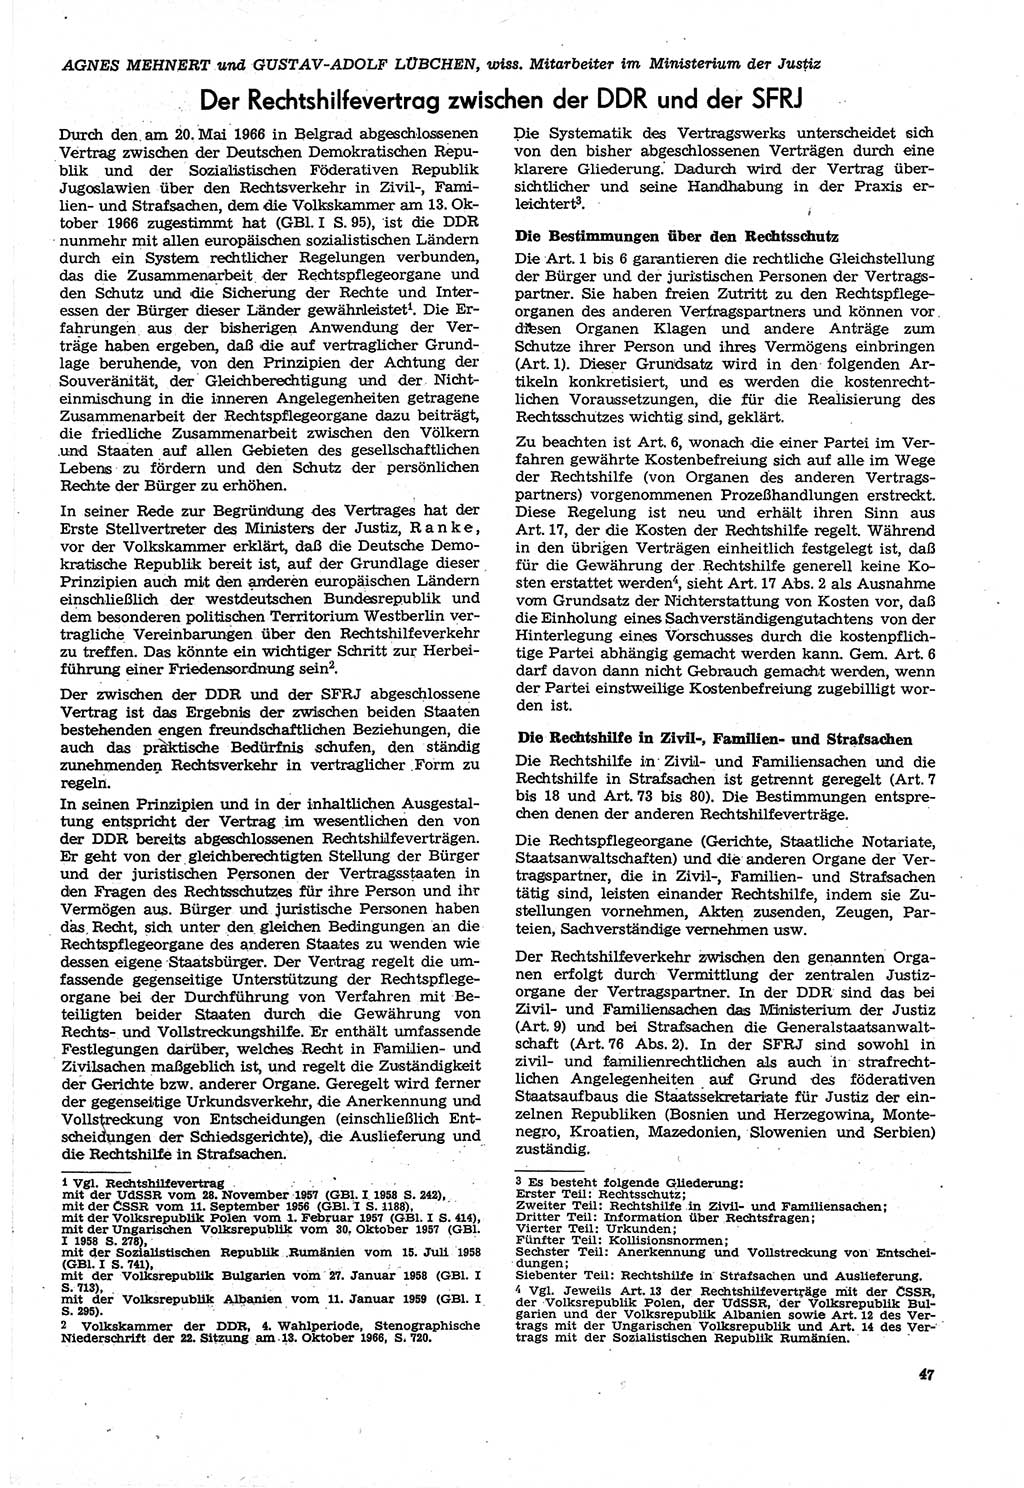 Neue Justiz (NJ), Zeitschrift für Recht und Rechtswissenschaft [Deutsche Demokratische Republik (DDR)], 21. Jahrgang 1967, Seite 47 (NJ DDR 1967, S. 47)